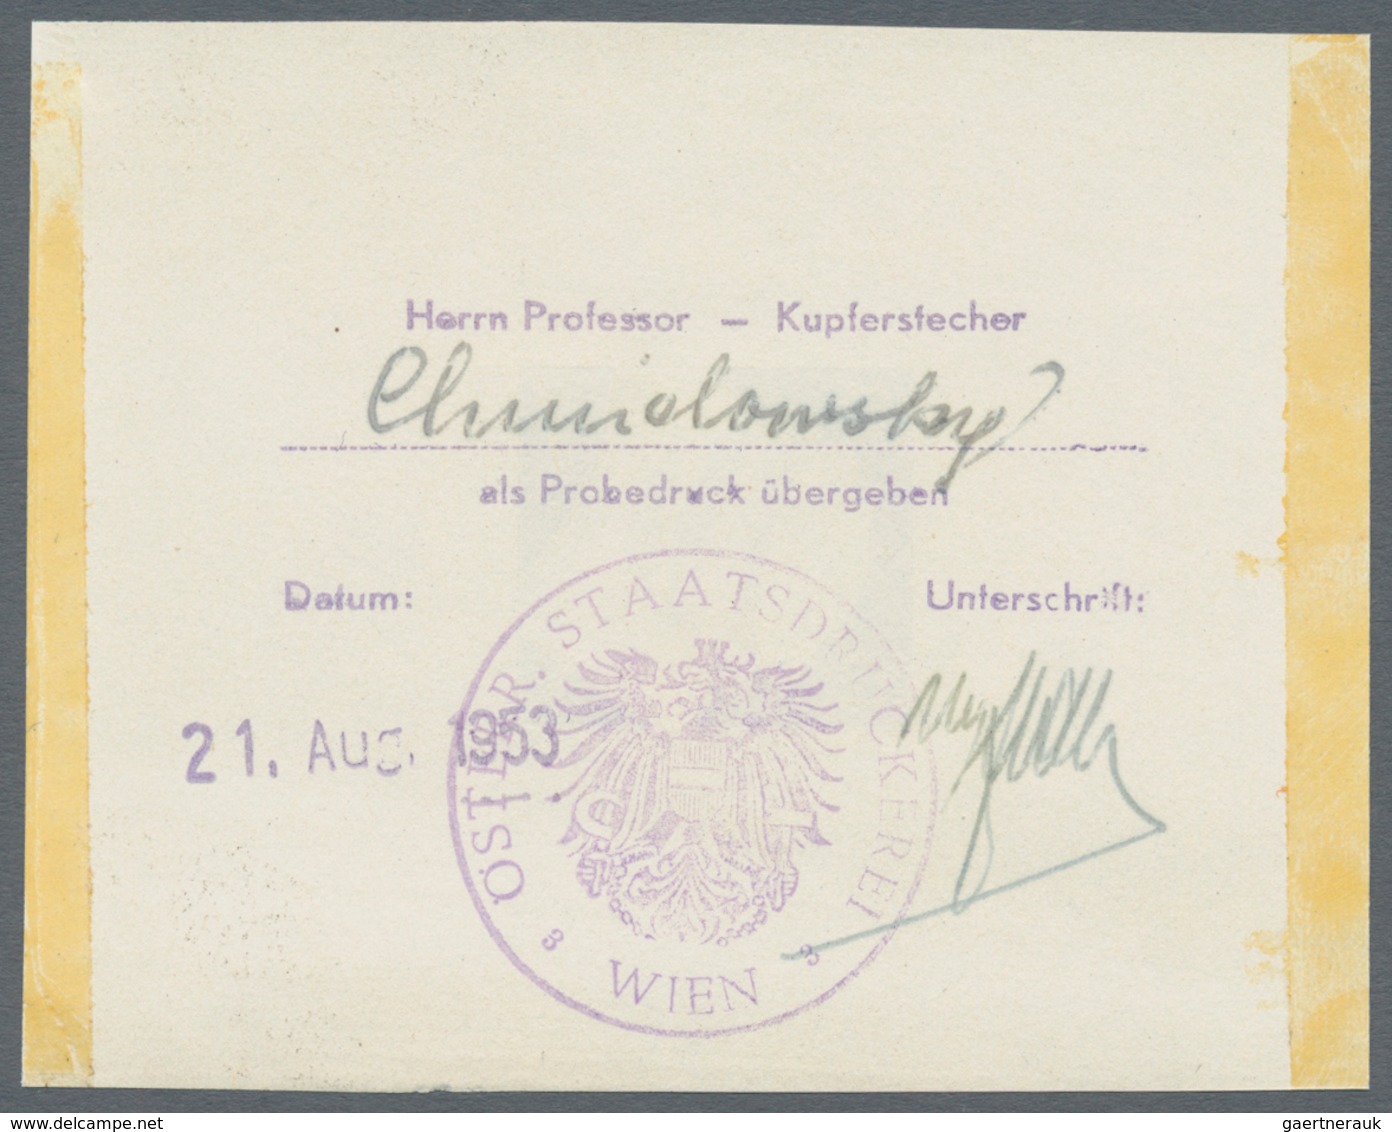 Österreich: 1953, 1 Sch. + 25 Gr. "Tag der Briefmarke", vier Phasendrucke in Schwarz (1.+2. Phase so